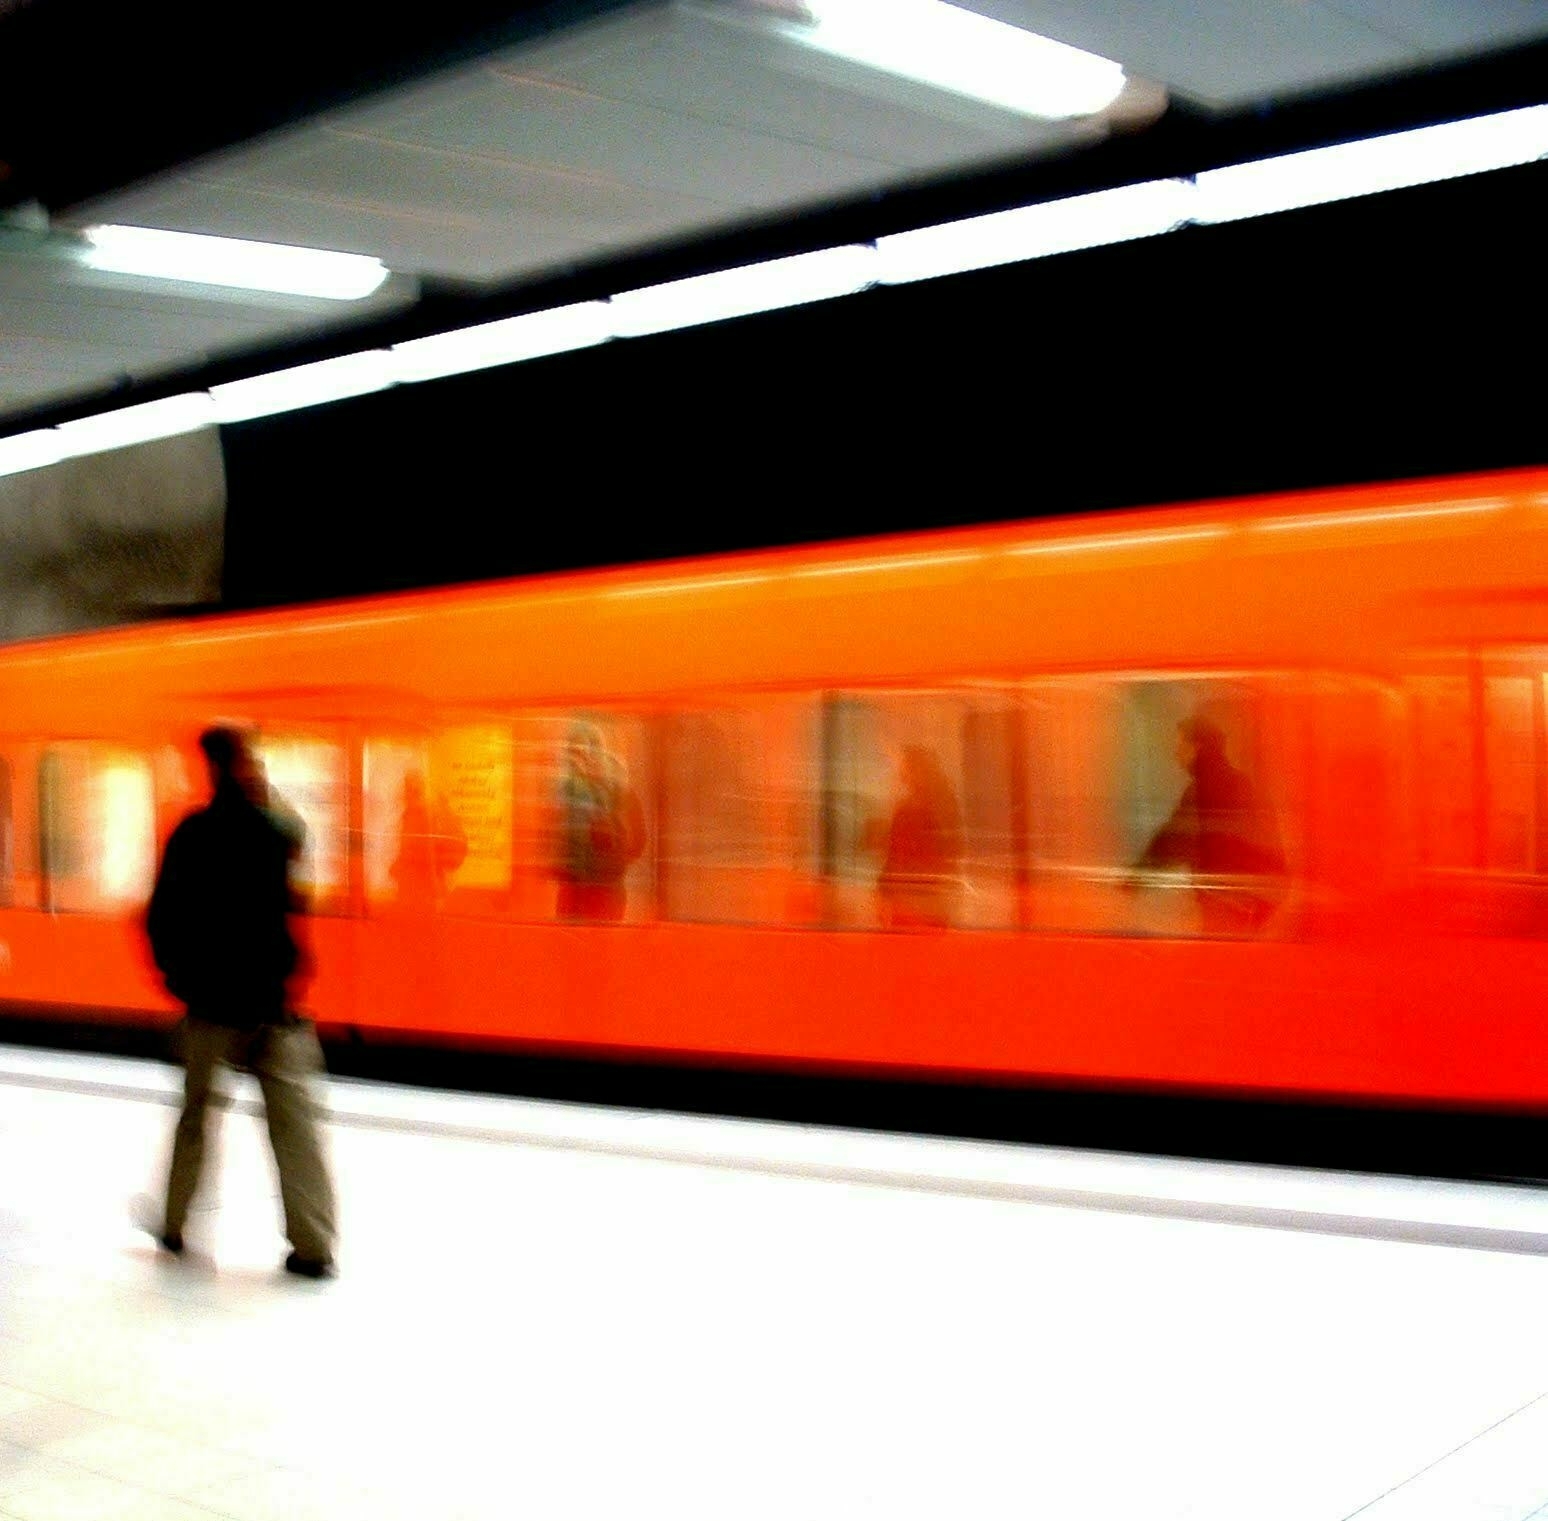 Metro Train in Helsinki